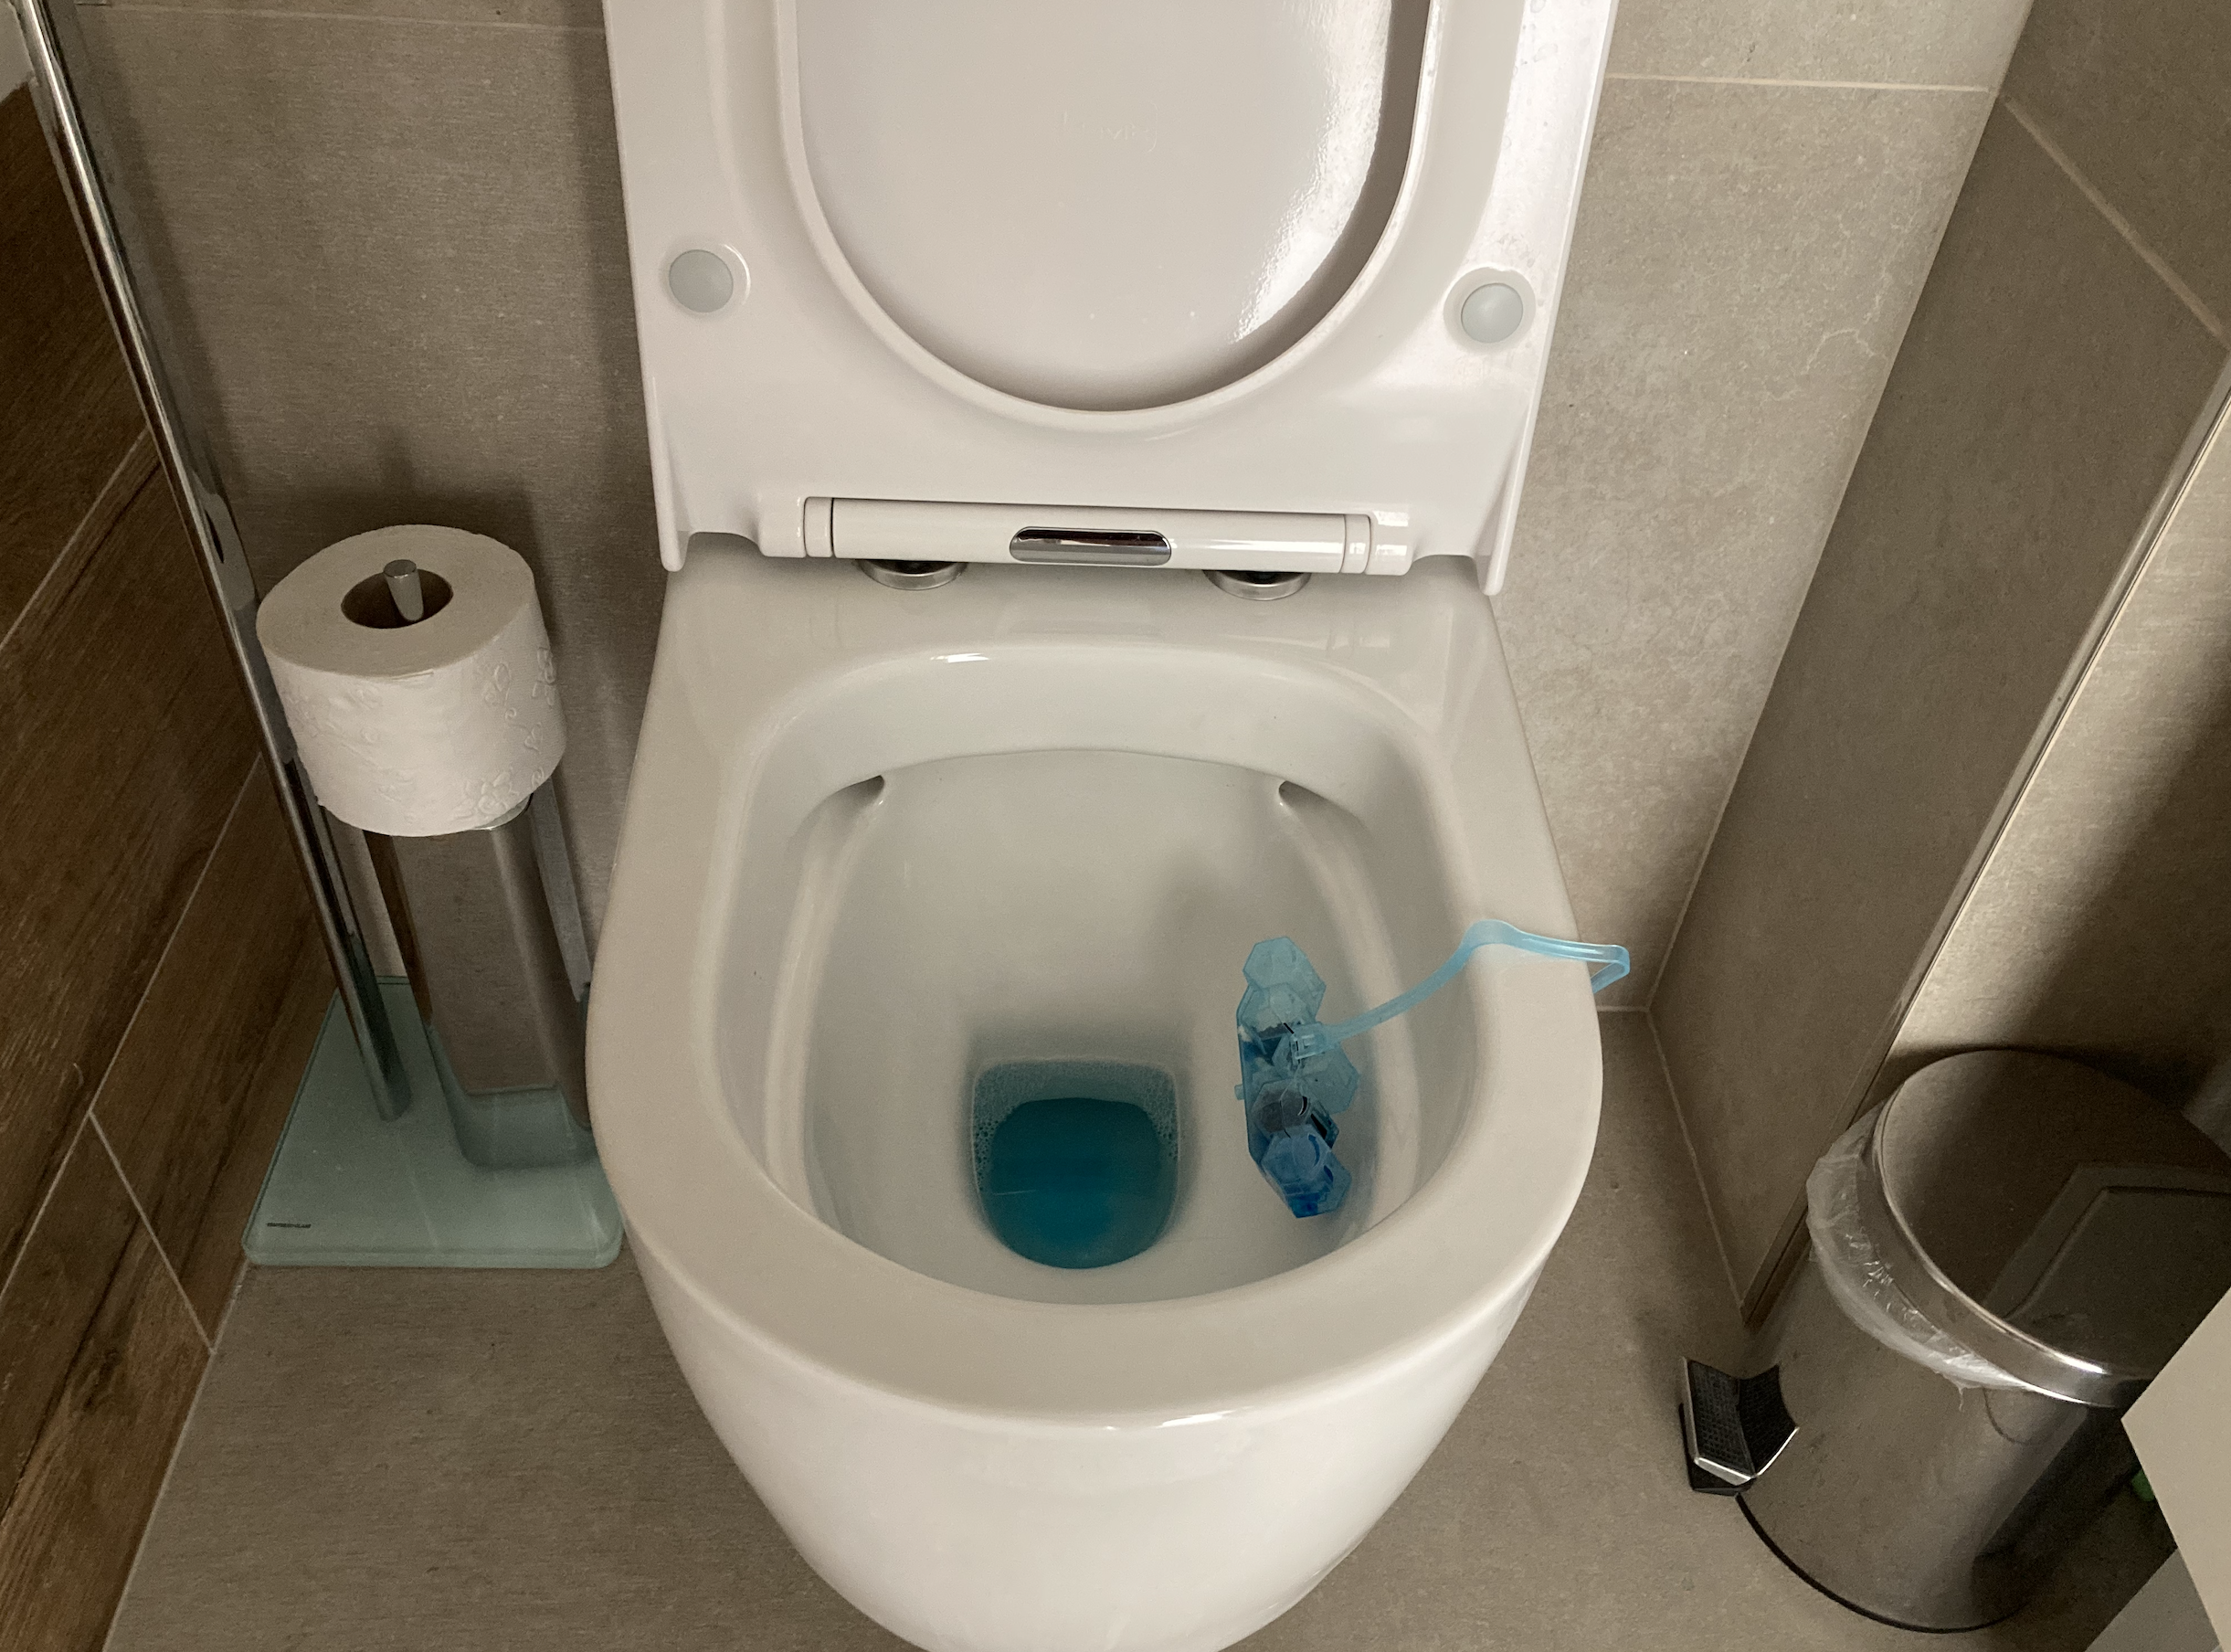 Szállodai trükk a tökéletesen tiszta WC-hez: Adjon hozzá 3 KANÁL ebből a készítményből a vízhez, és máris remek tisztítószert kap!